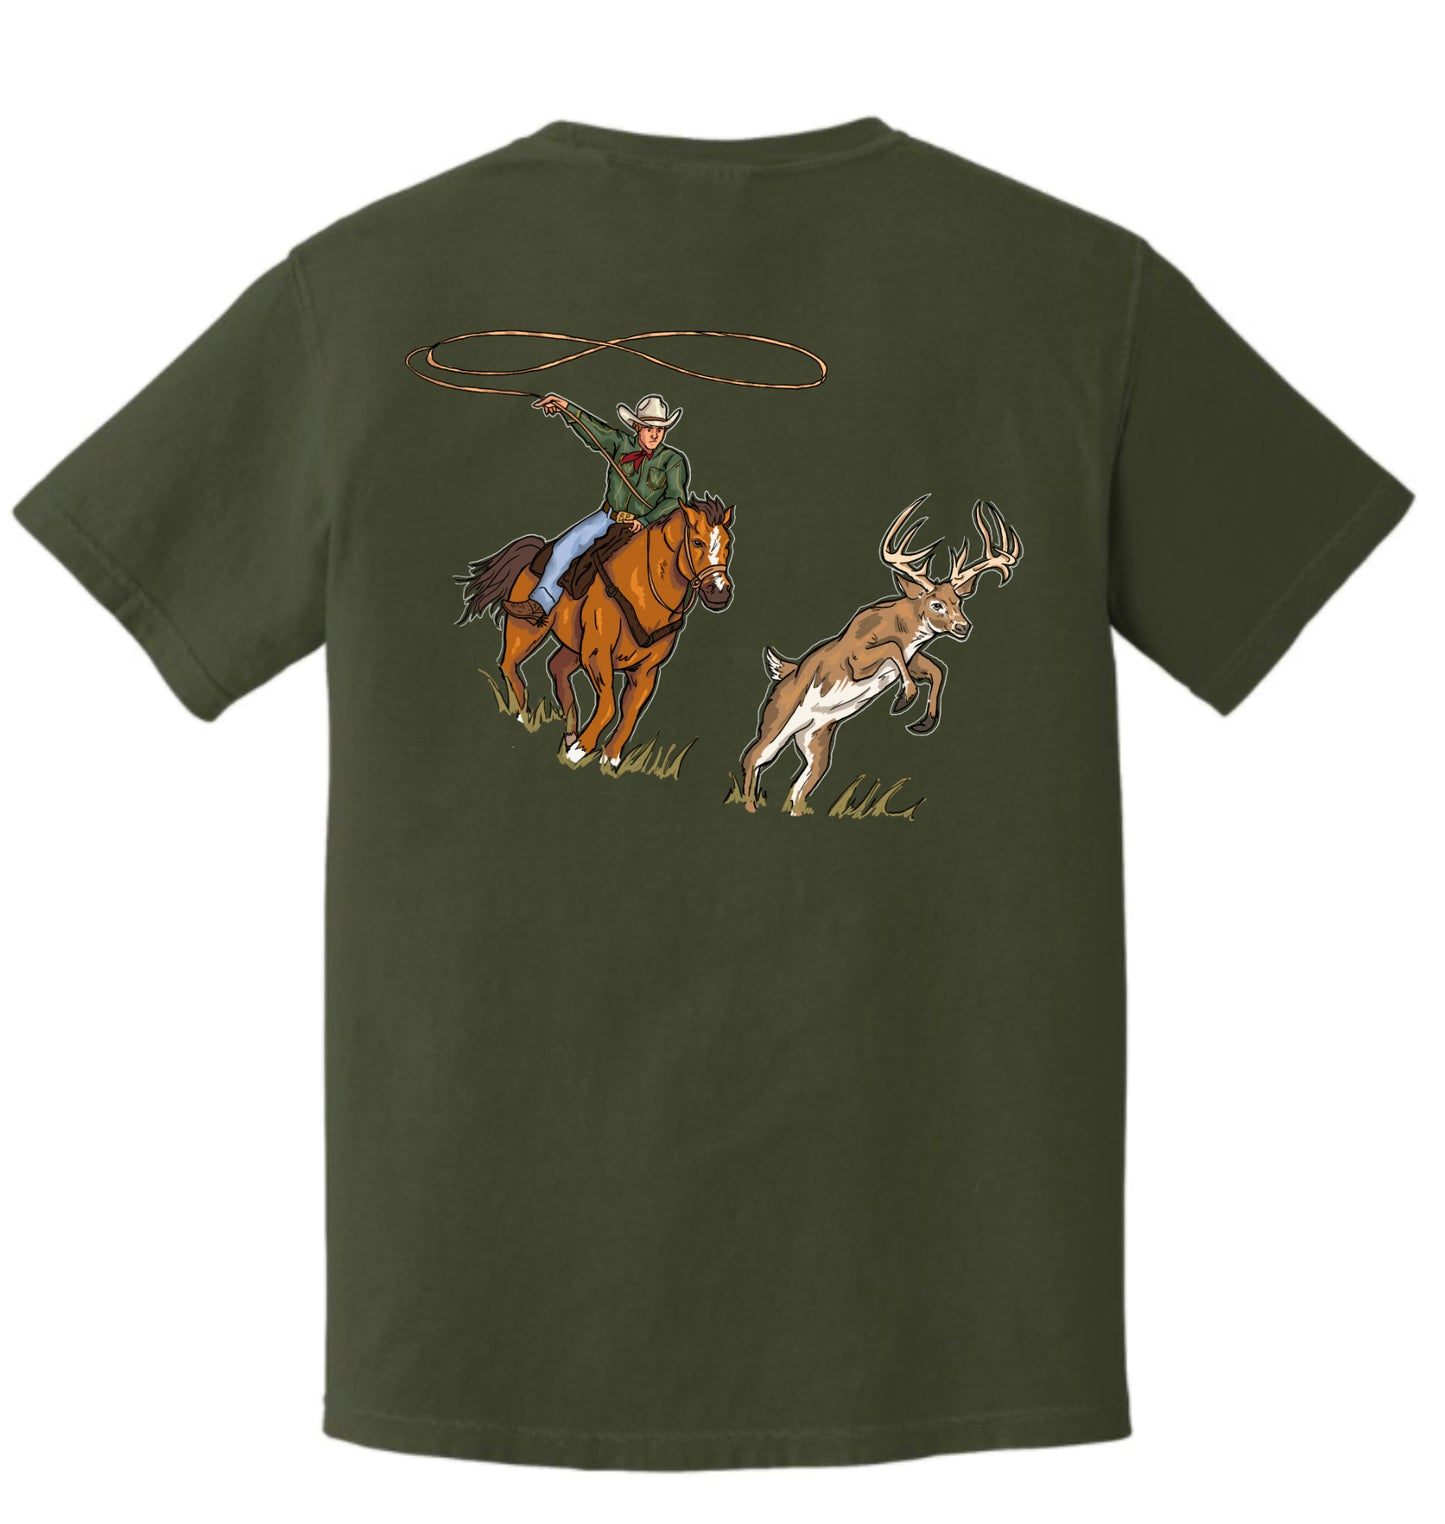 The Deer Wrangler T-Shirt